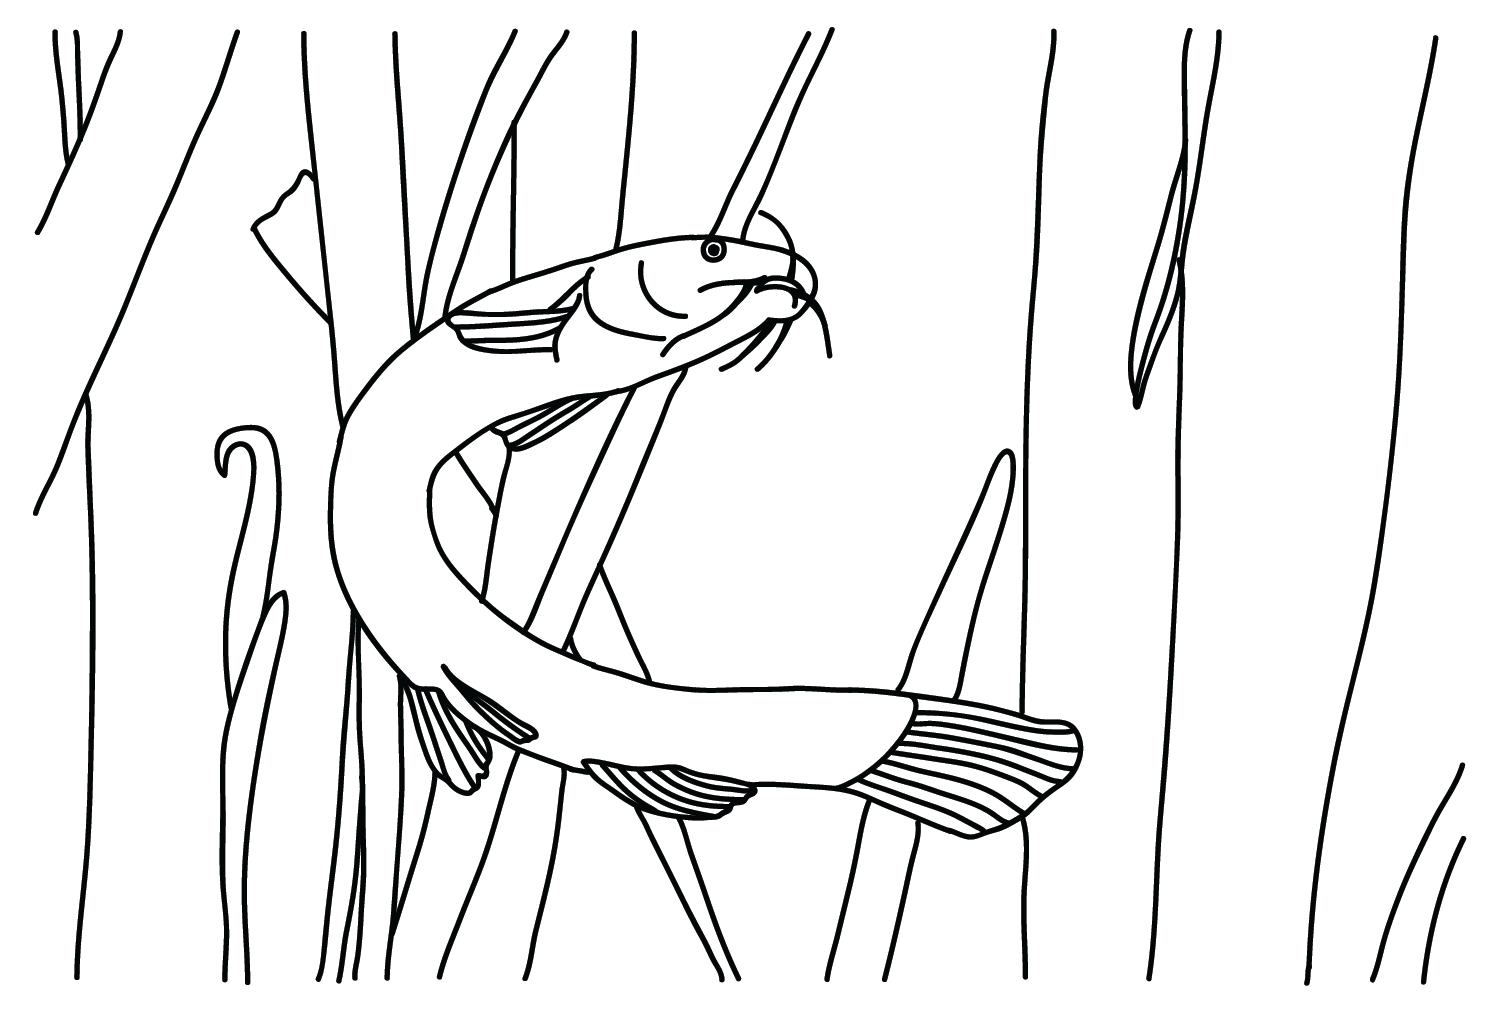 Desenhando Loach de Loach